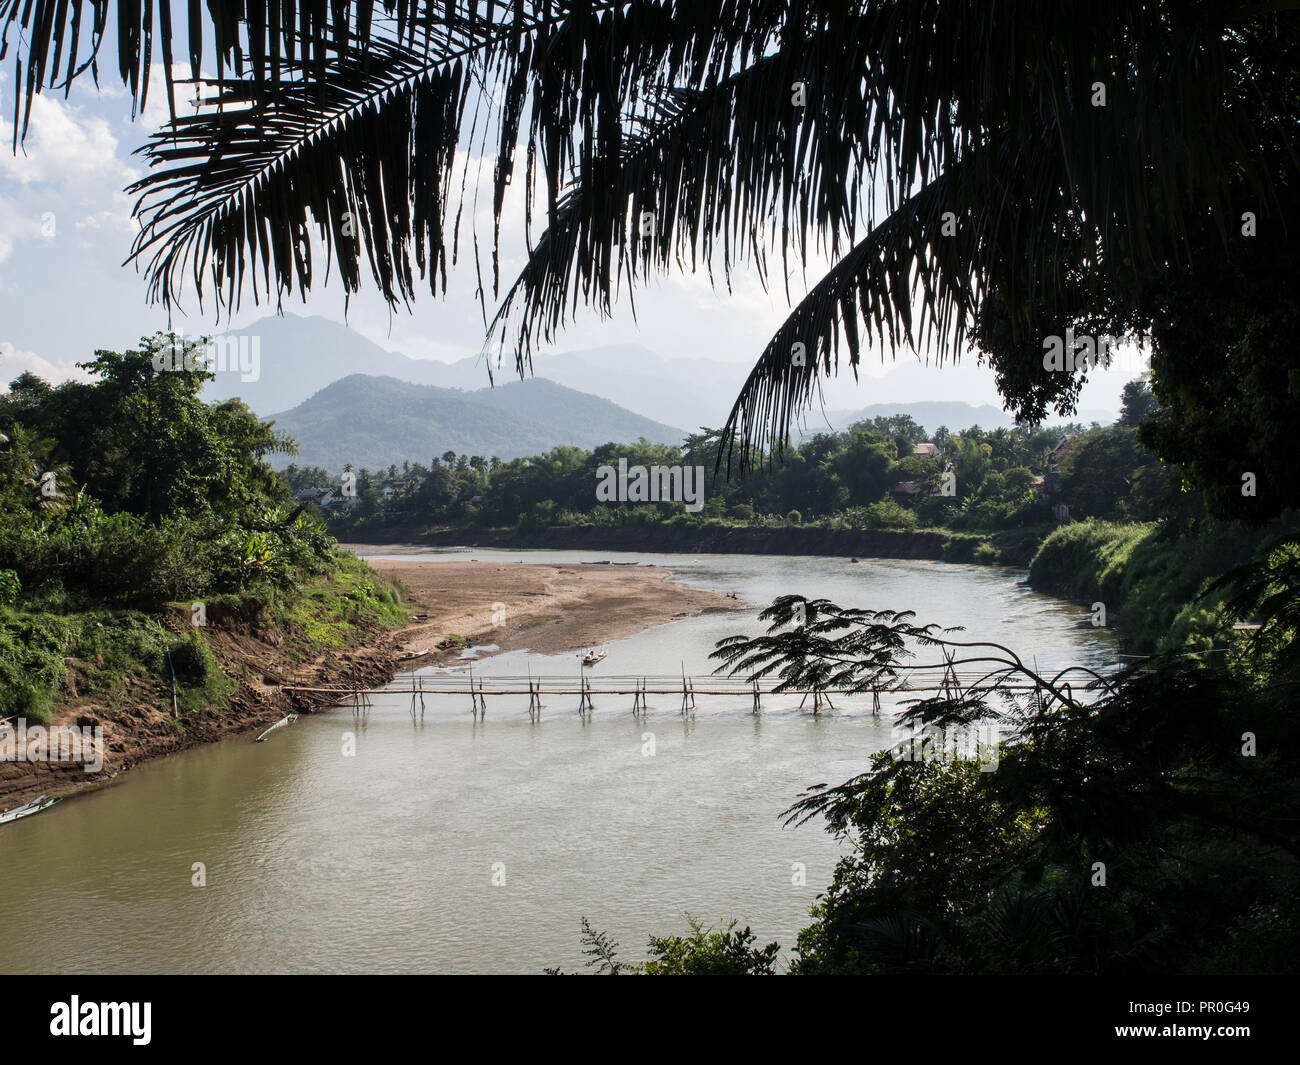 La rivière Nam Kang avec montagnes, pont de bambou, et des palmiers, Luang Prabang, Laos, Indochine, Asie du Sud, Asie Banque D'Images